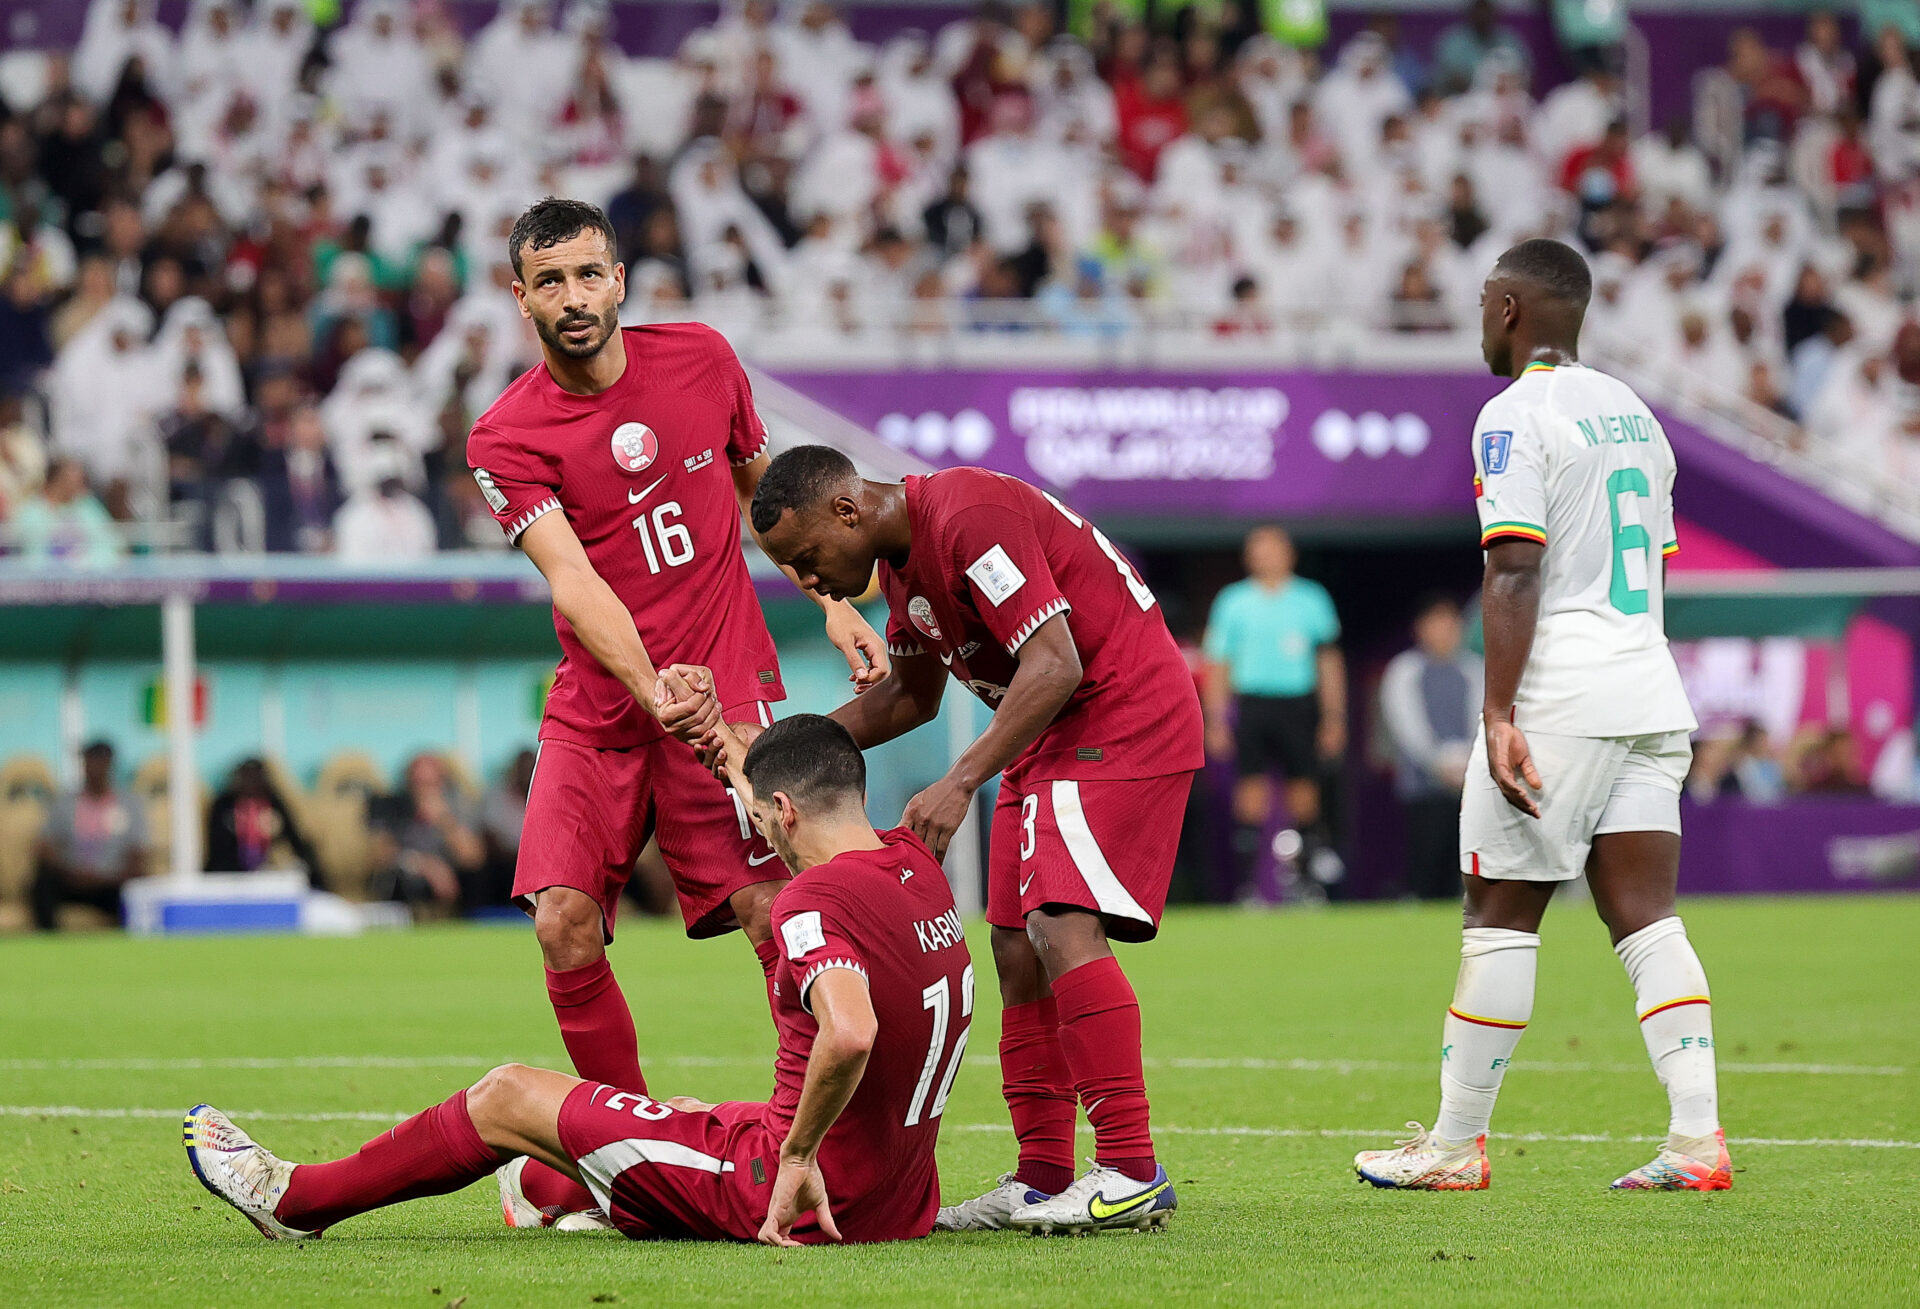 Второй матч чемпионата. Сборная Катара. Футбольный стадион 2022, Катар. Катар Сенегал 25 ноября 2022. Сборная Катара по футболу 2022.